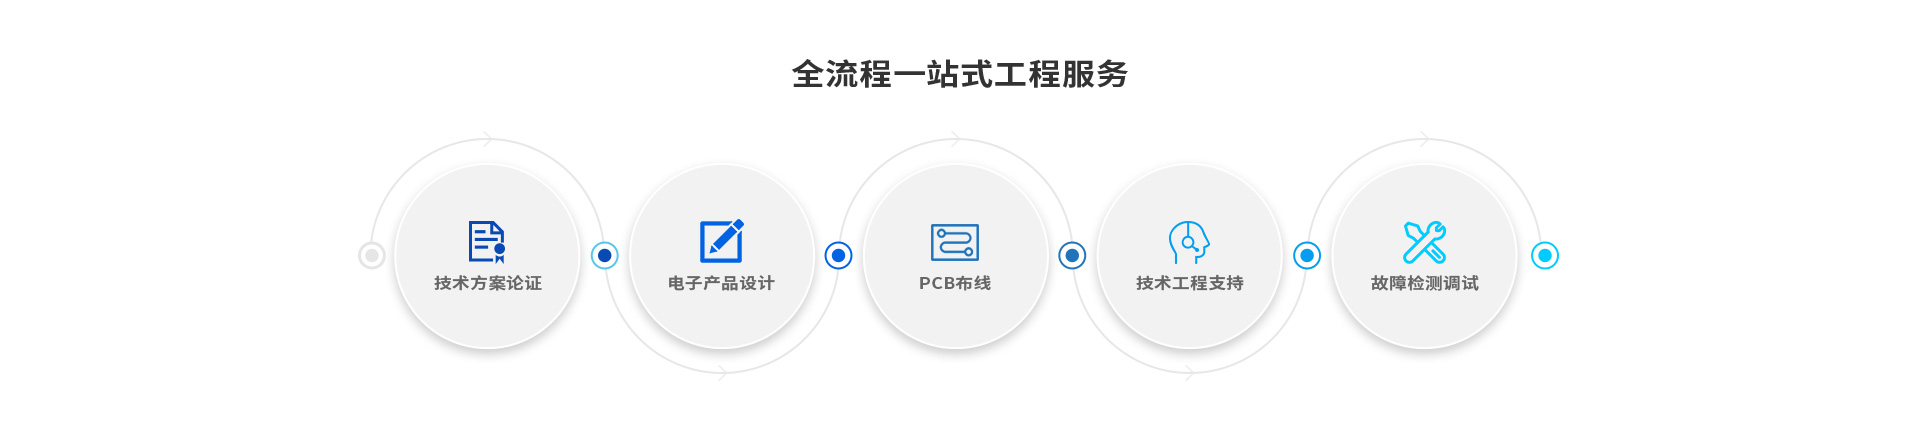 全流程一站式工程服务-云汉芯城ICKey.cn